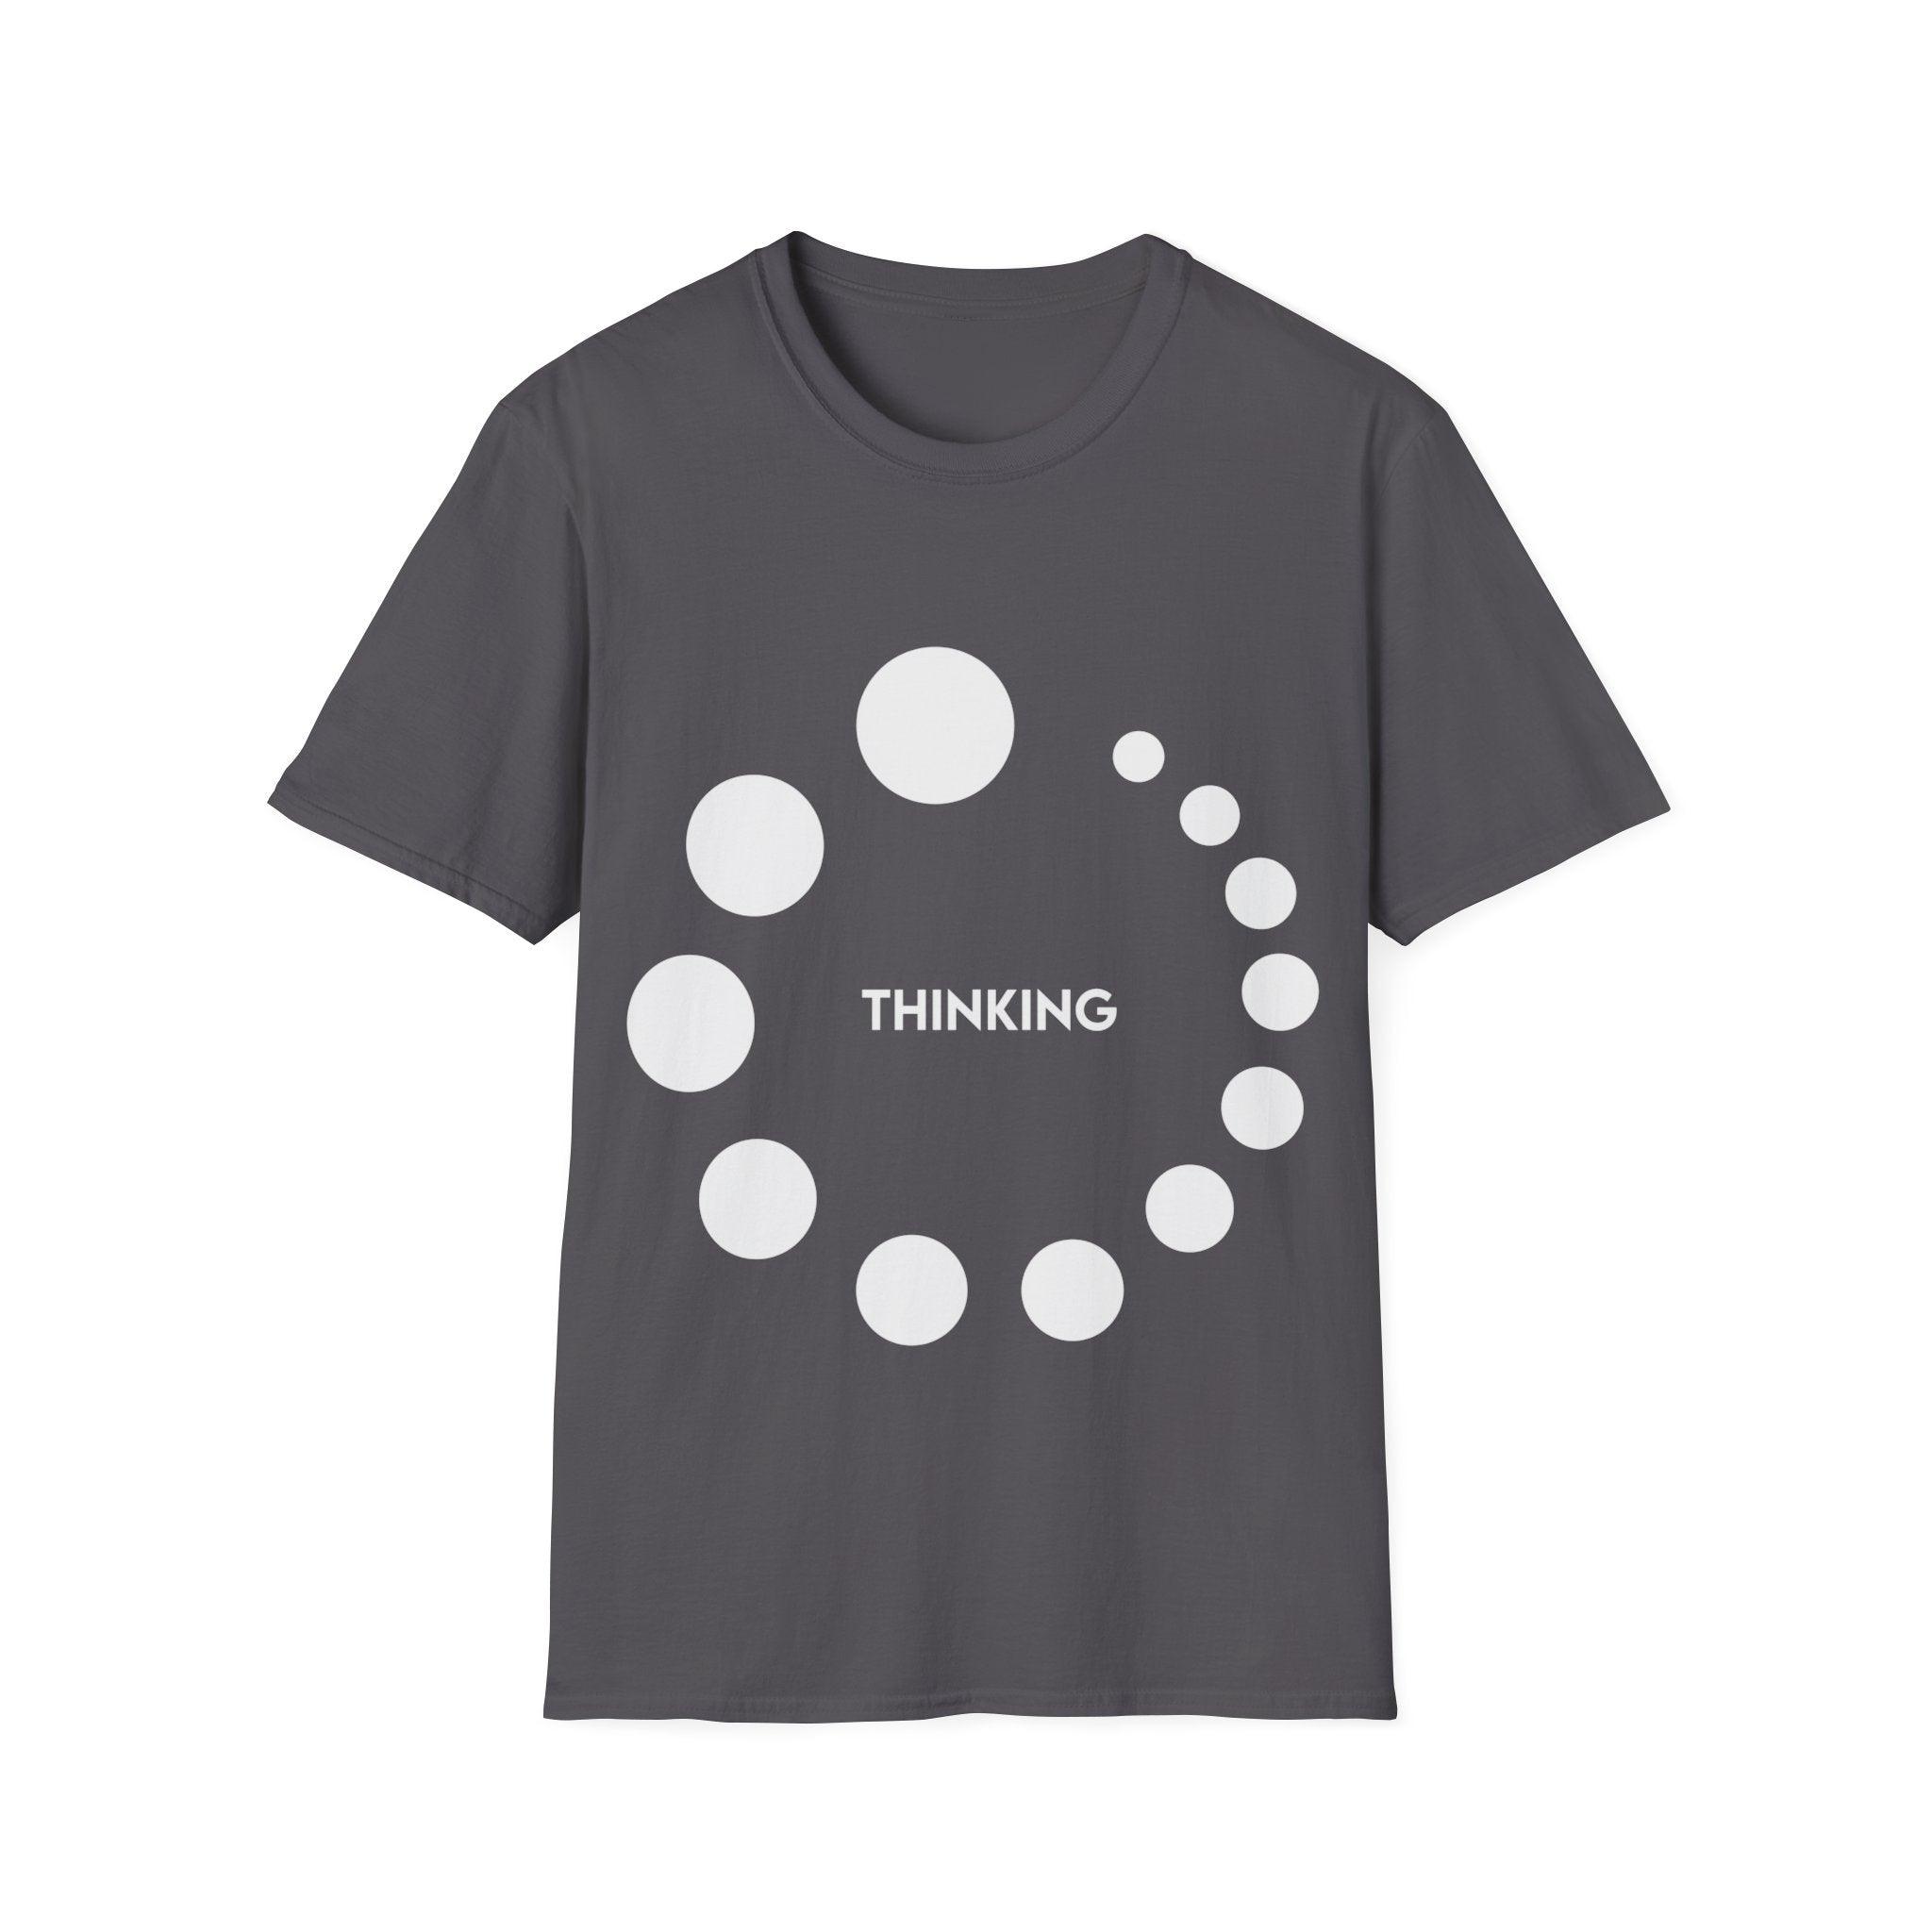 Thinking or Overthinking Unisex Softstyle T-Shirt Crew neck, DTG, Men's Clothing, Regular fit, T-shirts - plusminusco.com